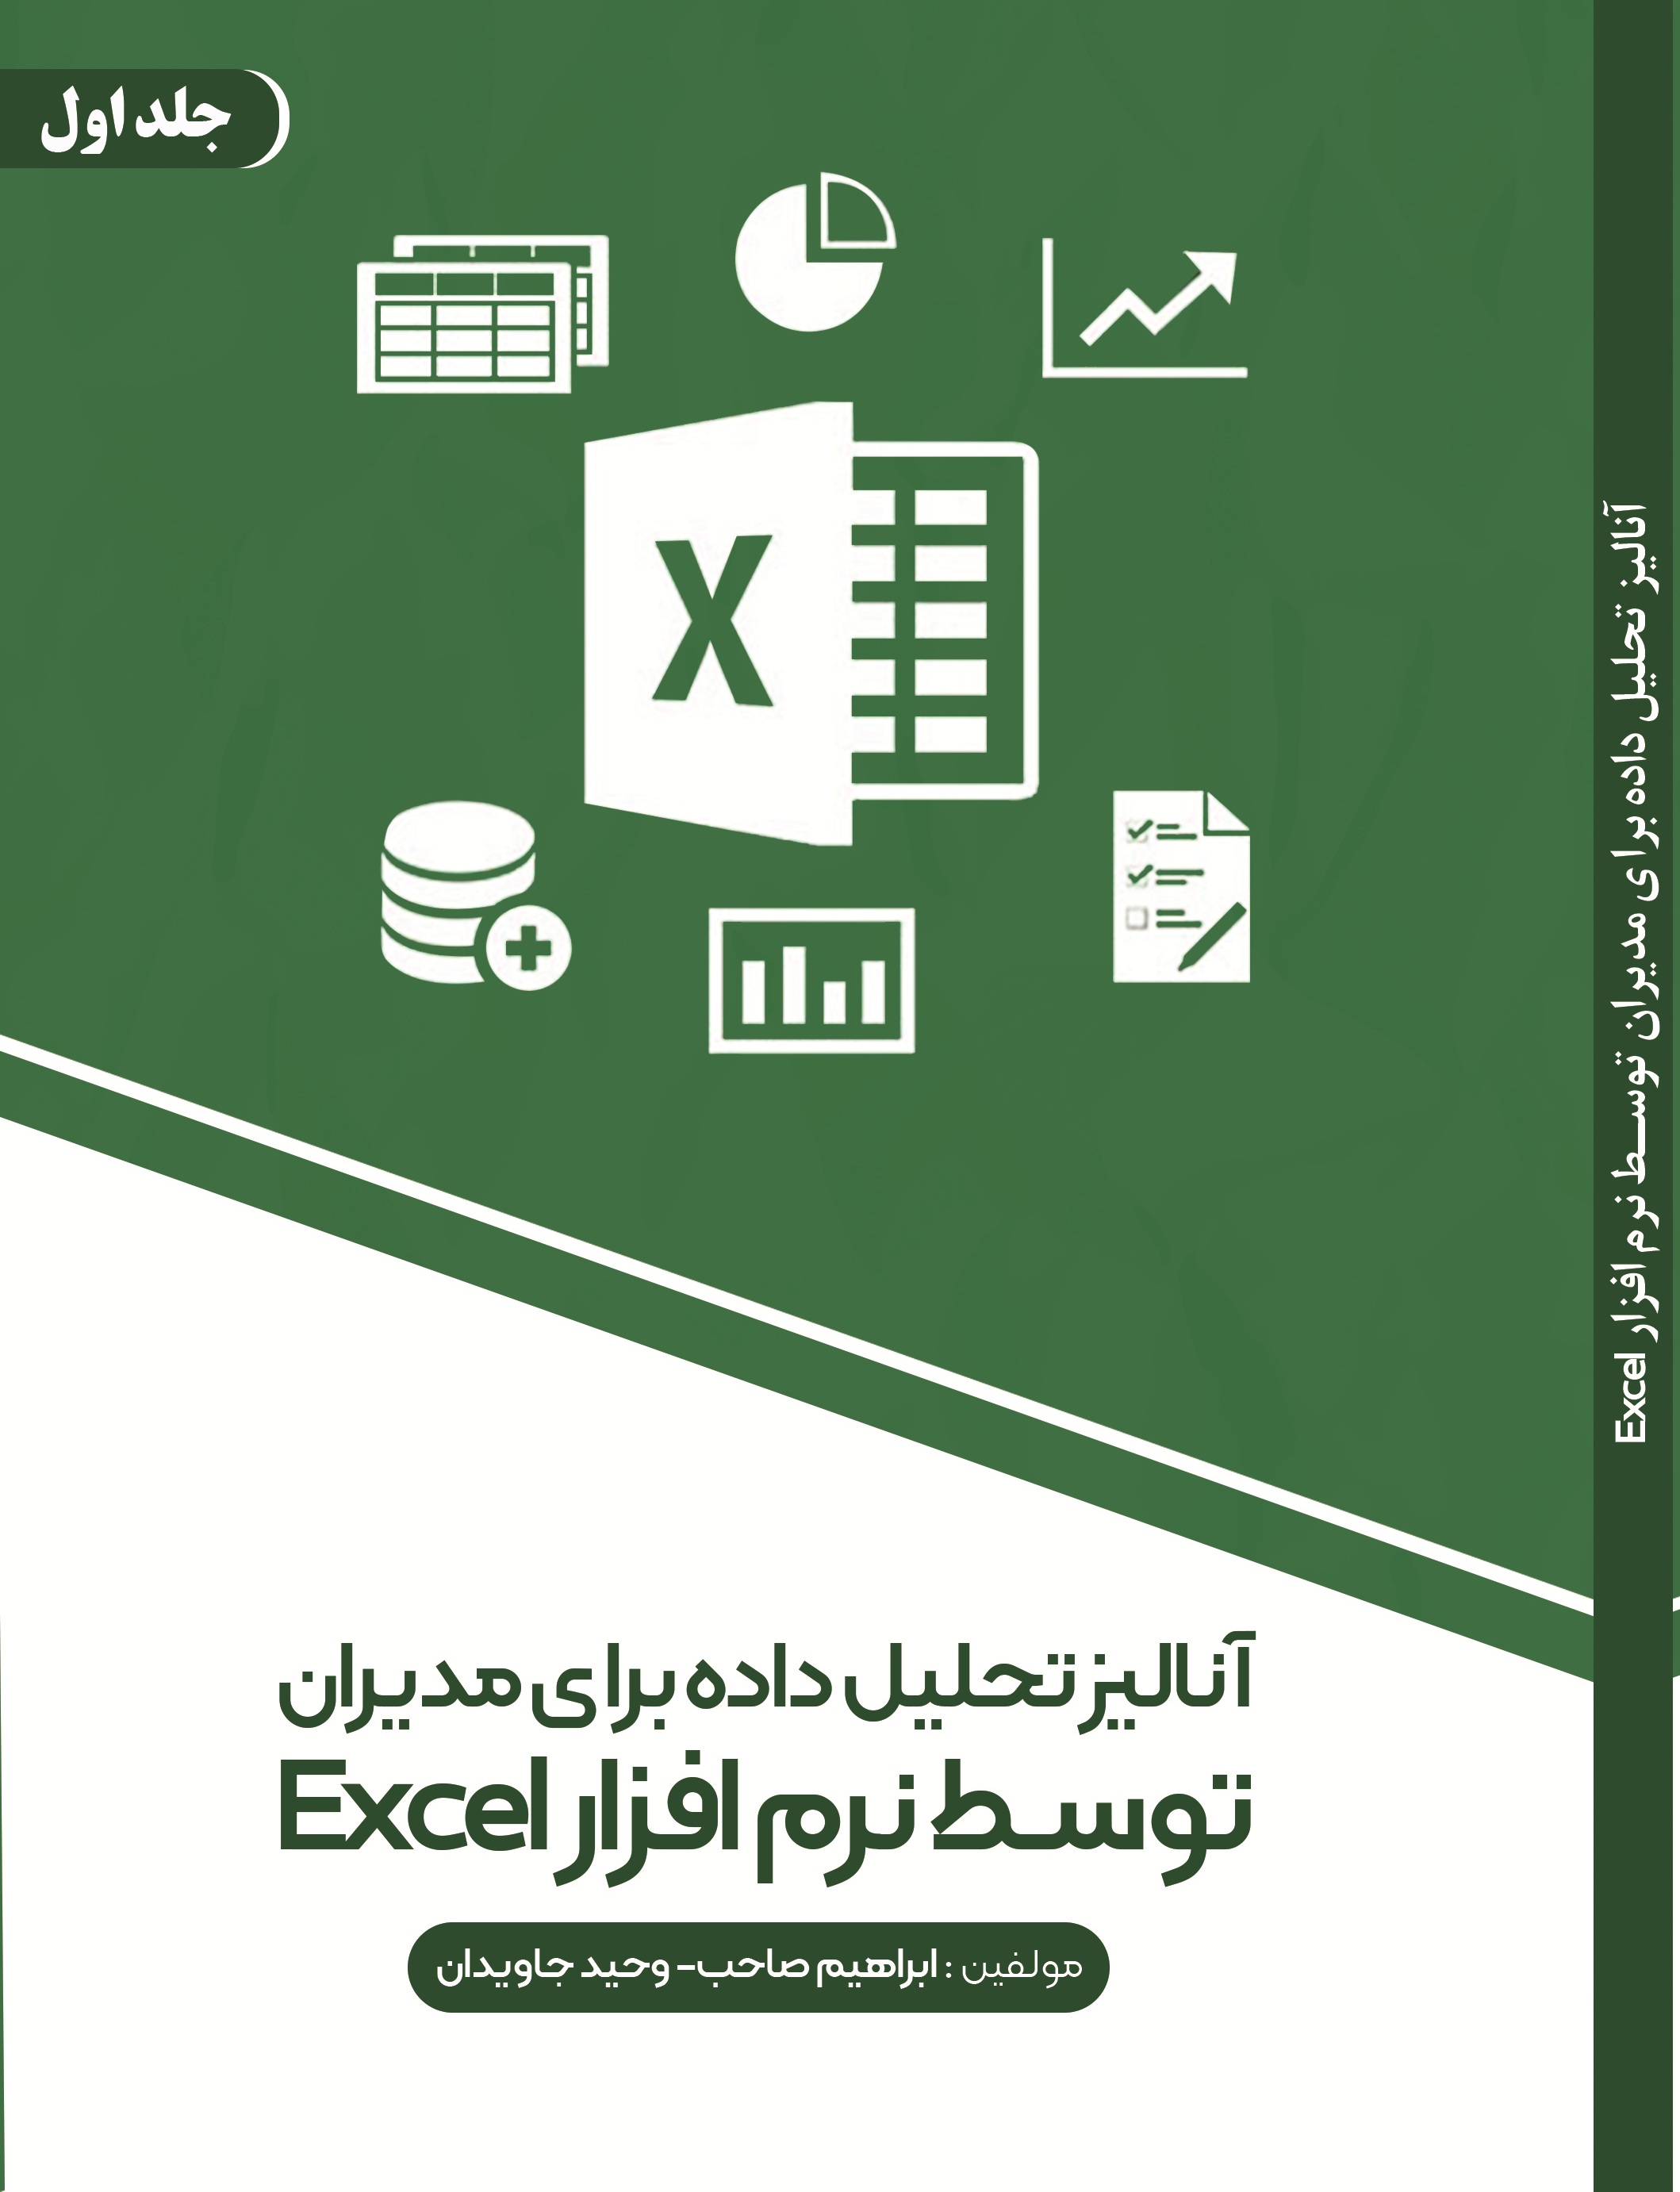 آنالیز تحلیل داده برای مدیران توسط نرم افزار Excel